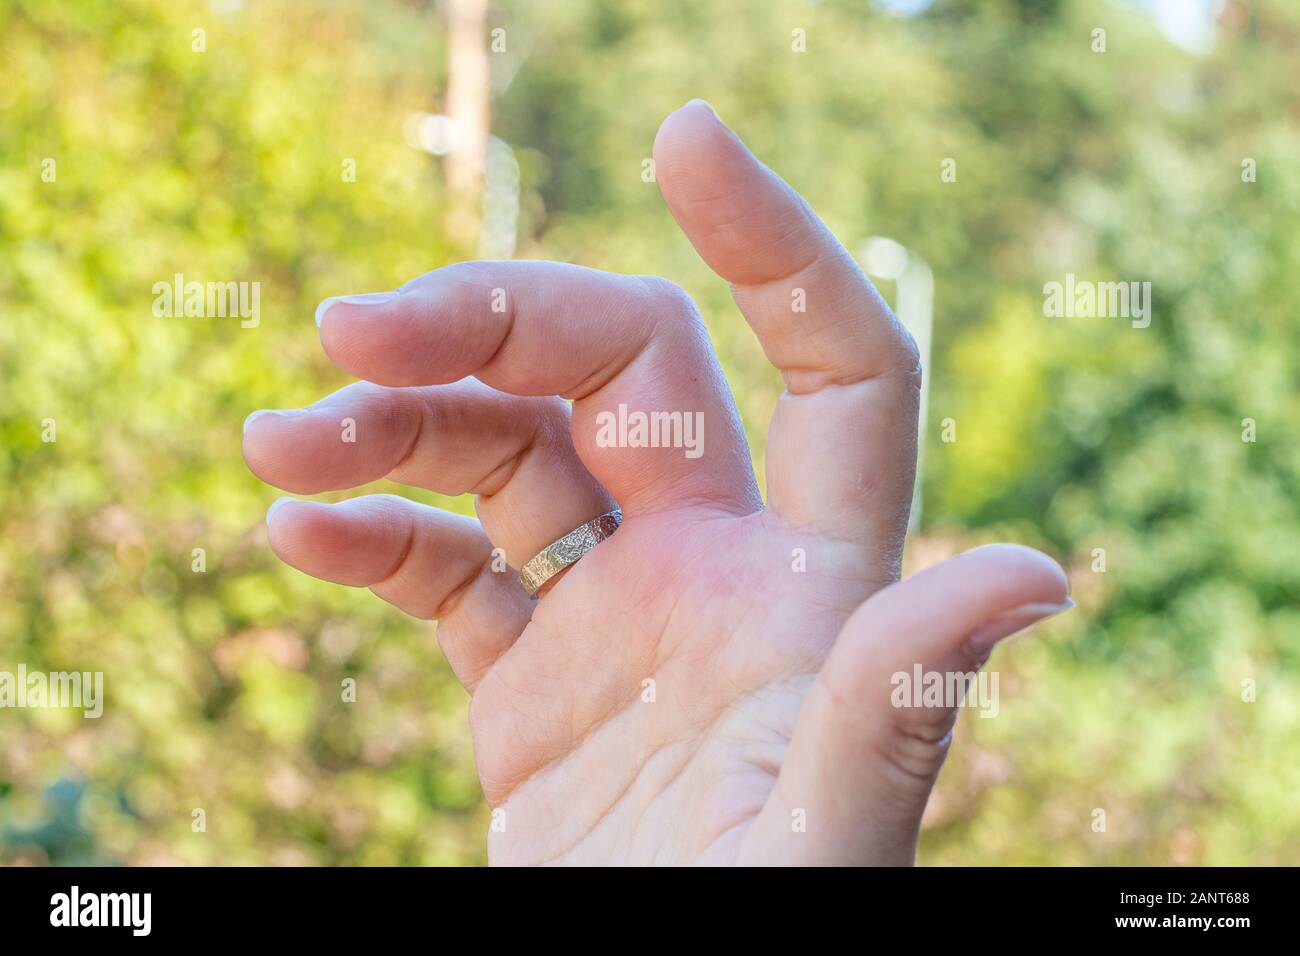 Une main droite avec une piqûre d'abeille mark, l'enflure, gonflement des mains, des doigts la main après une piqûre d'abeille pendant un jour d'été Banque D'Images